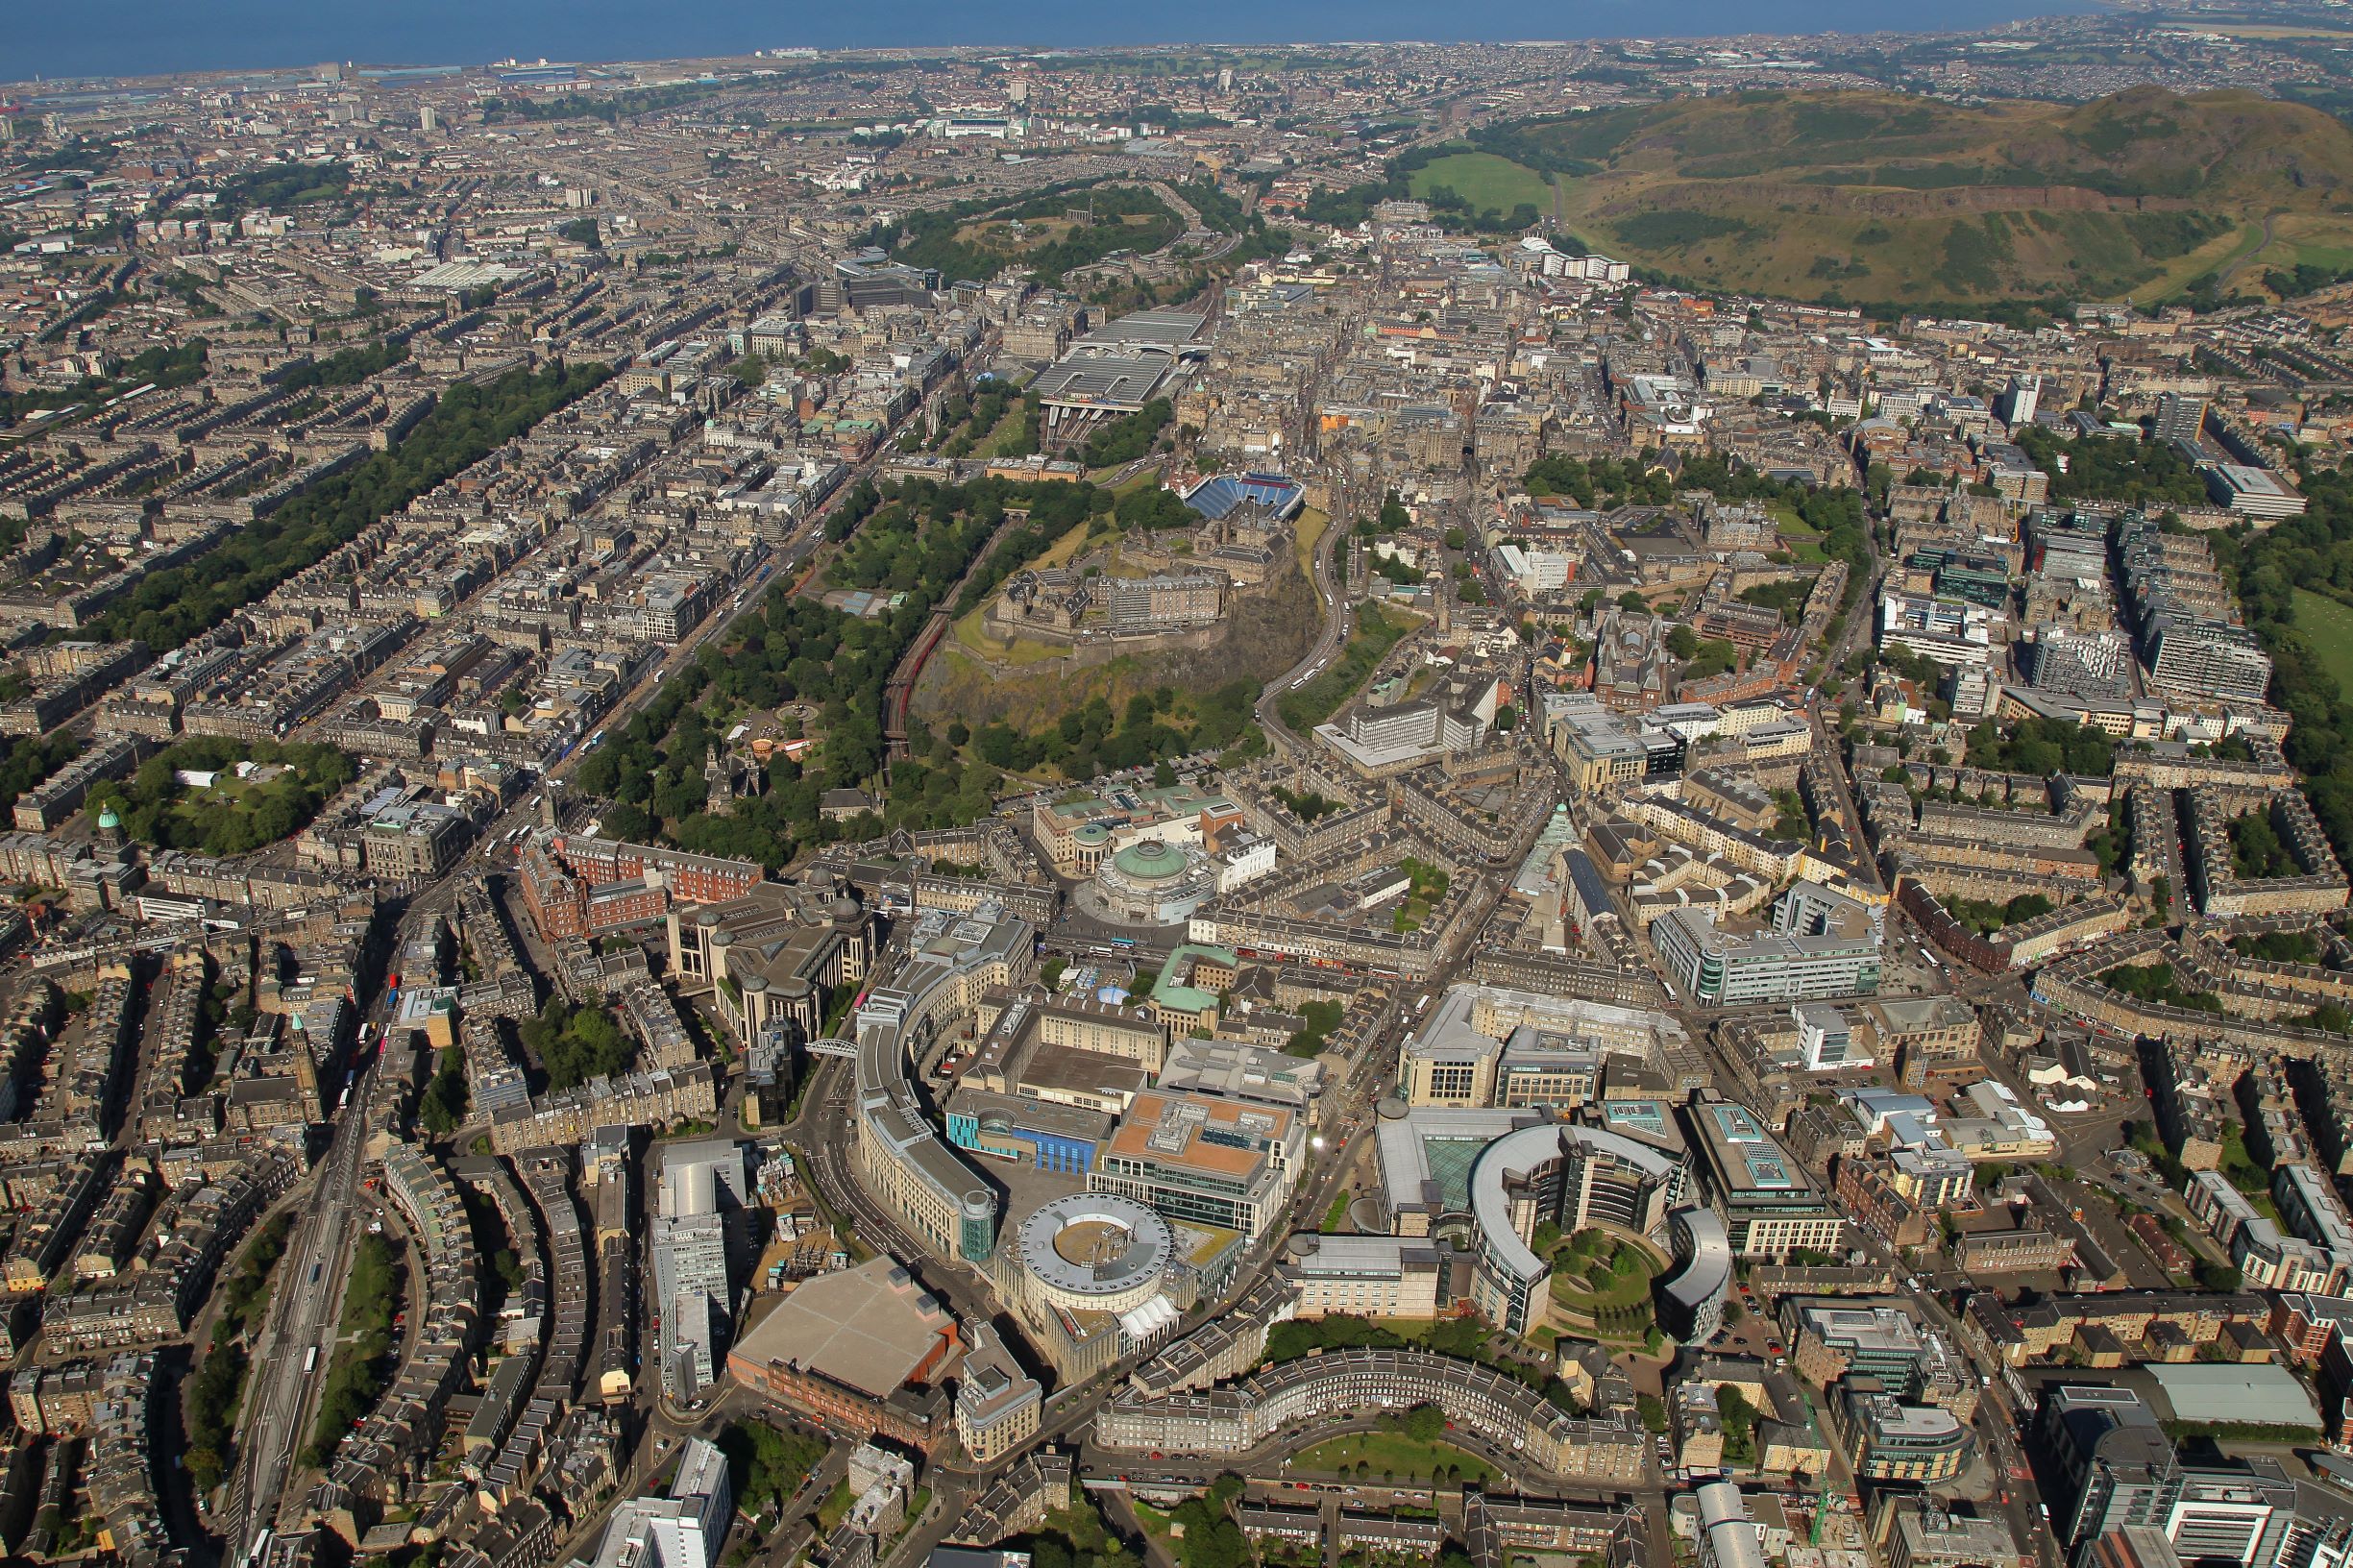 Edinburgh's population increased by 13% in ten years